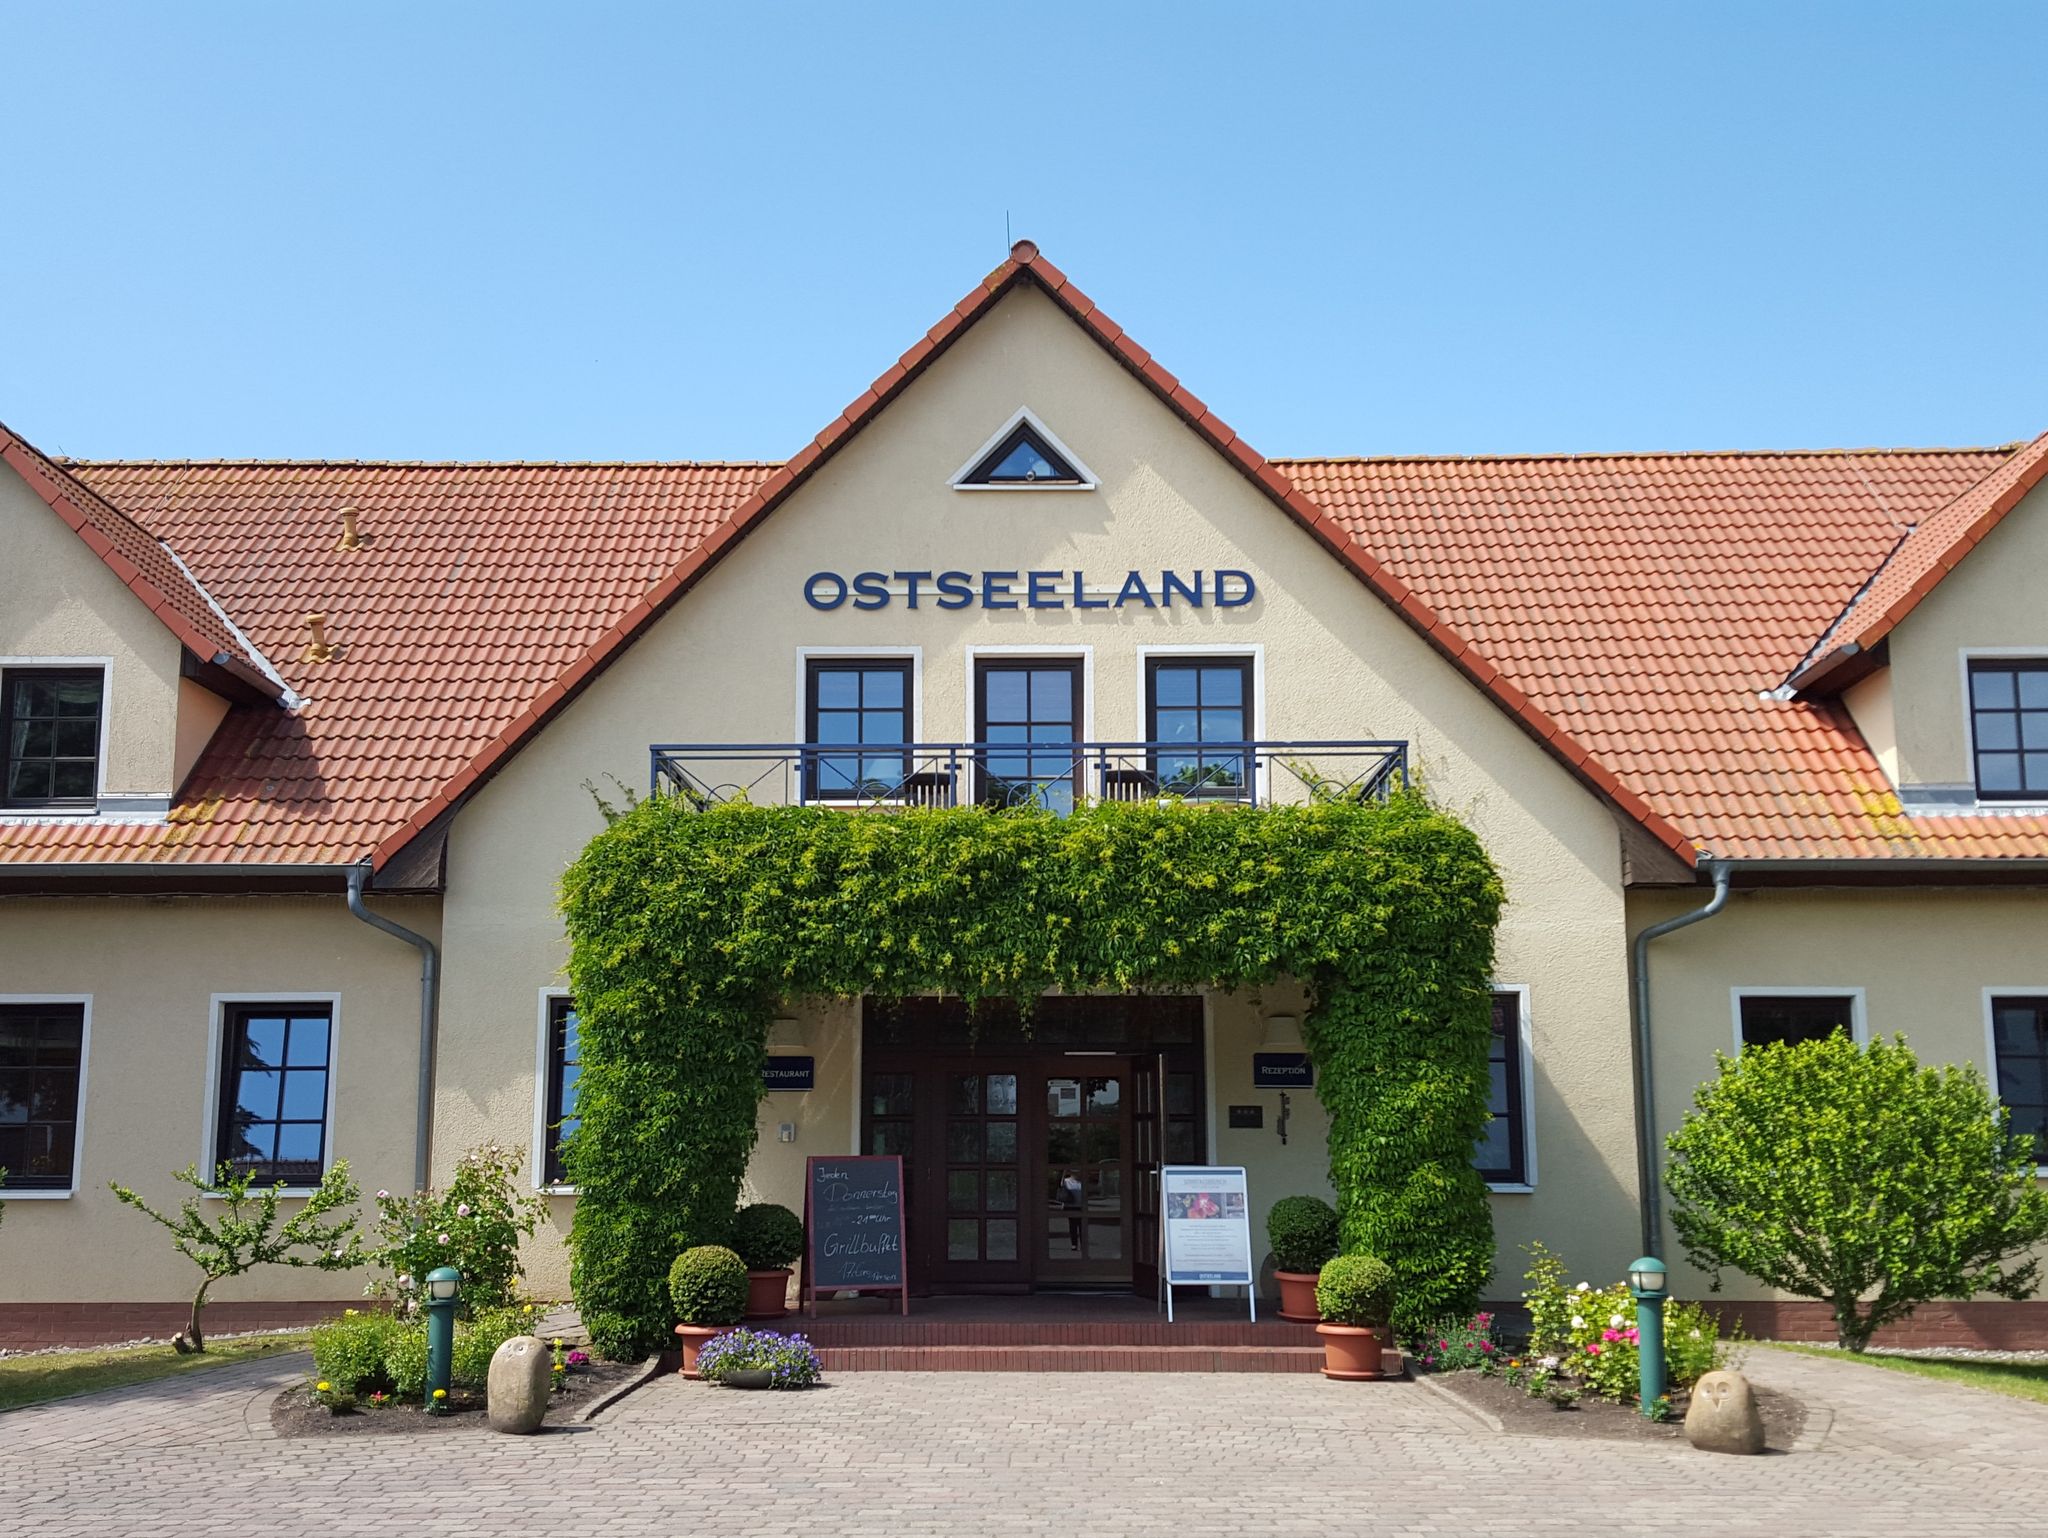 Ostseeland